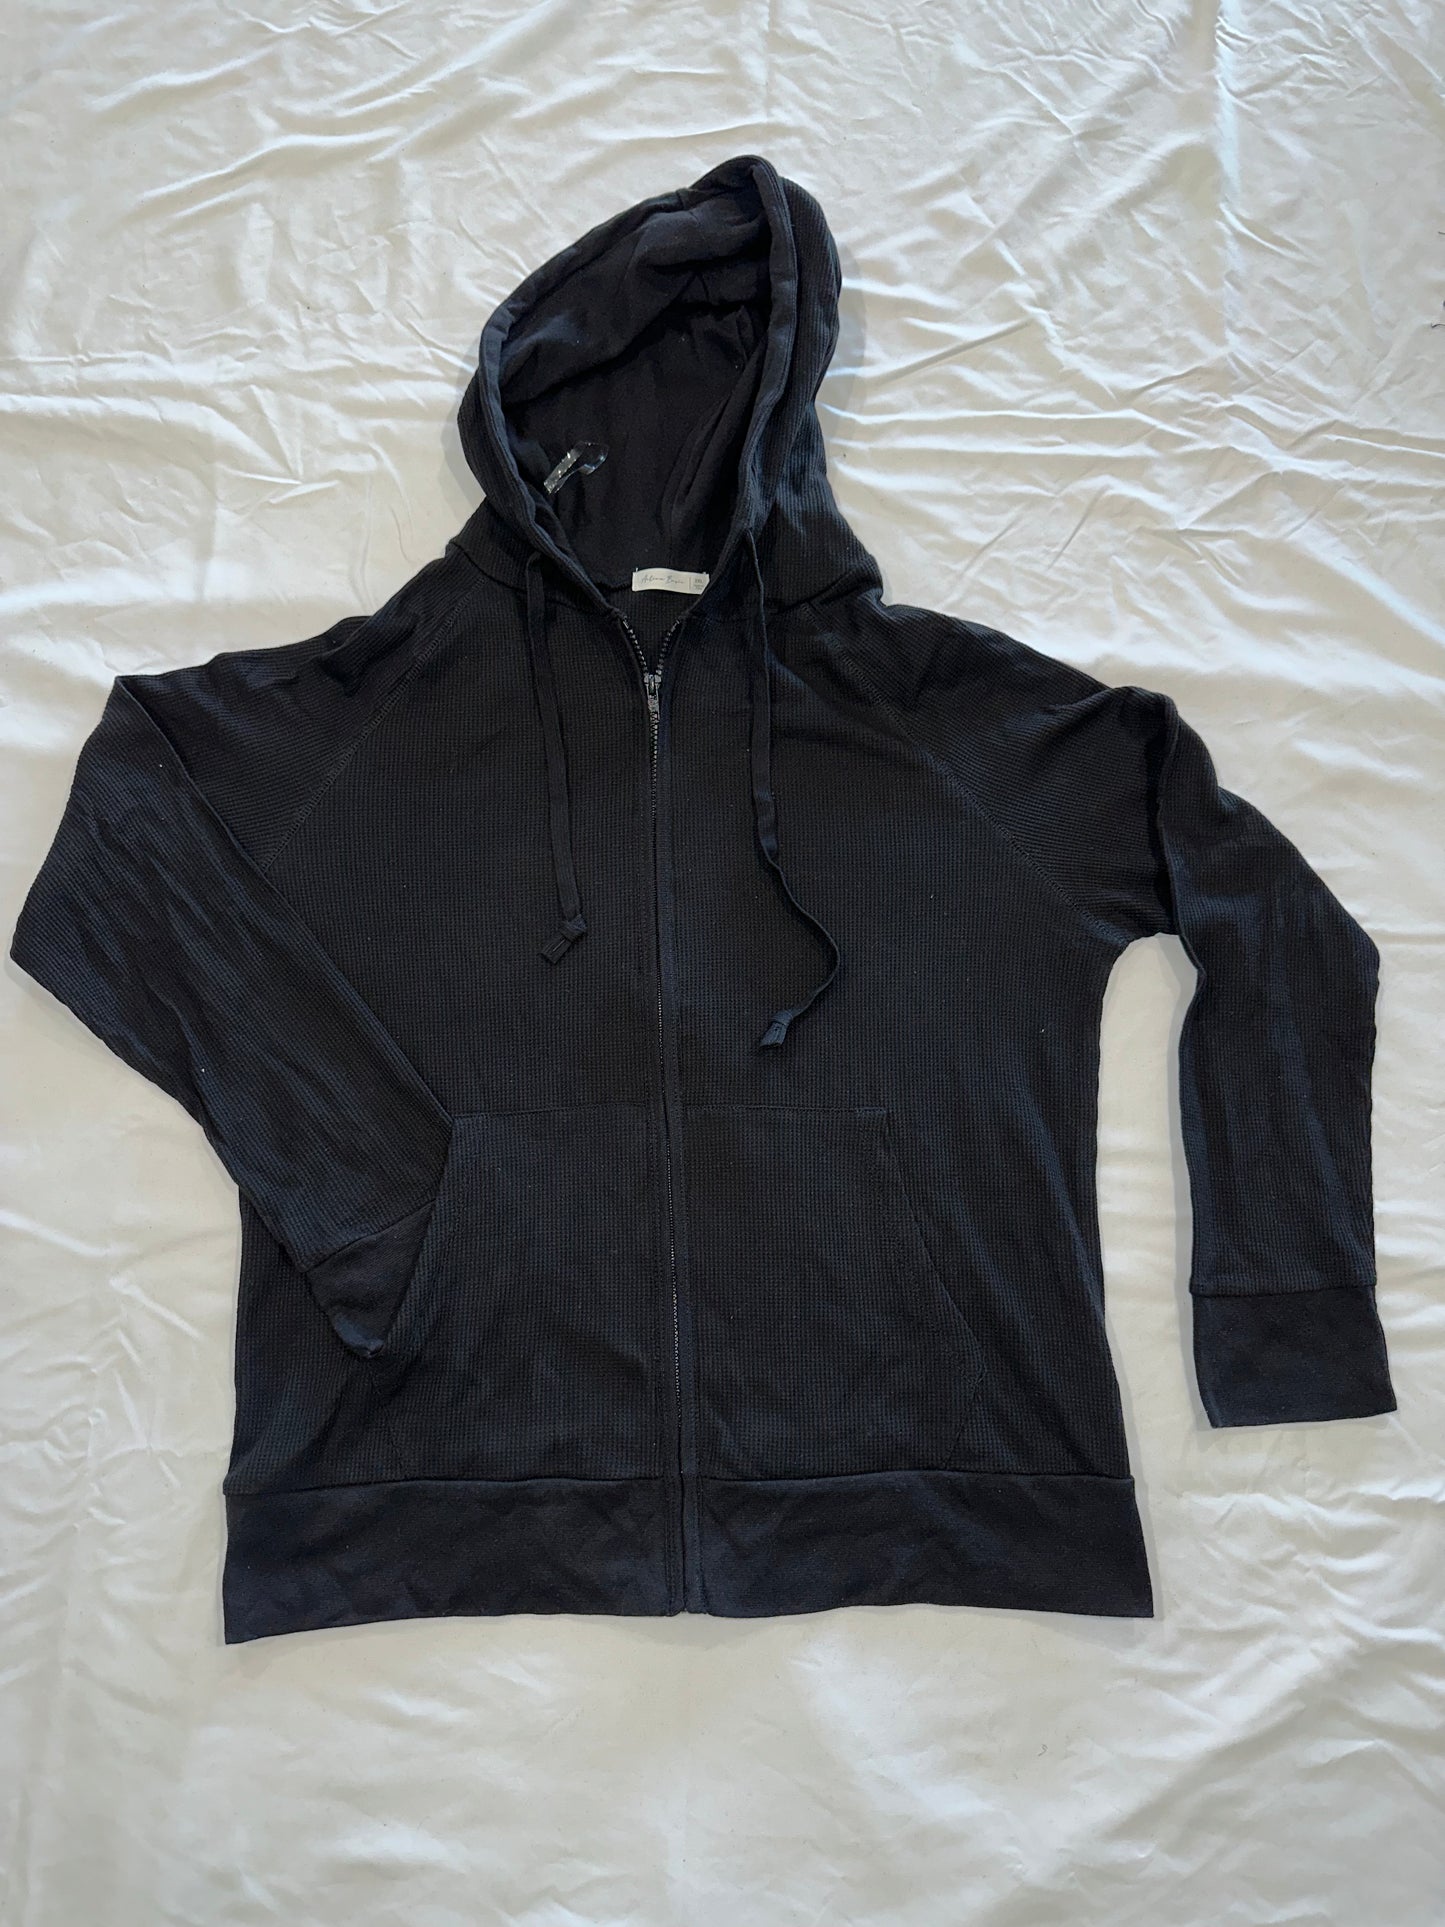 Black Thermal Zip Up Jacket Bling "Cali" Cursive Letter Design